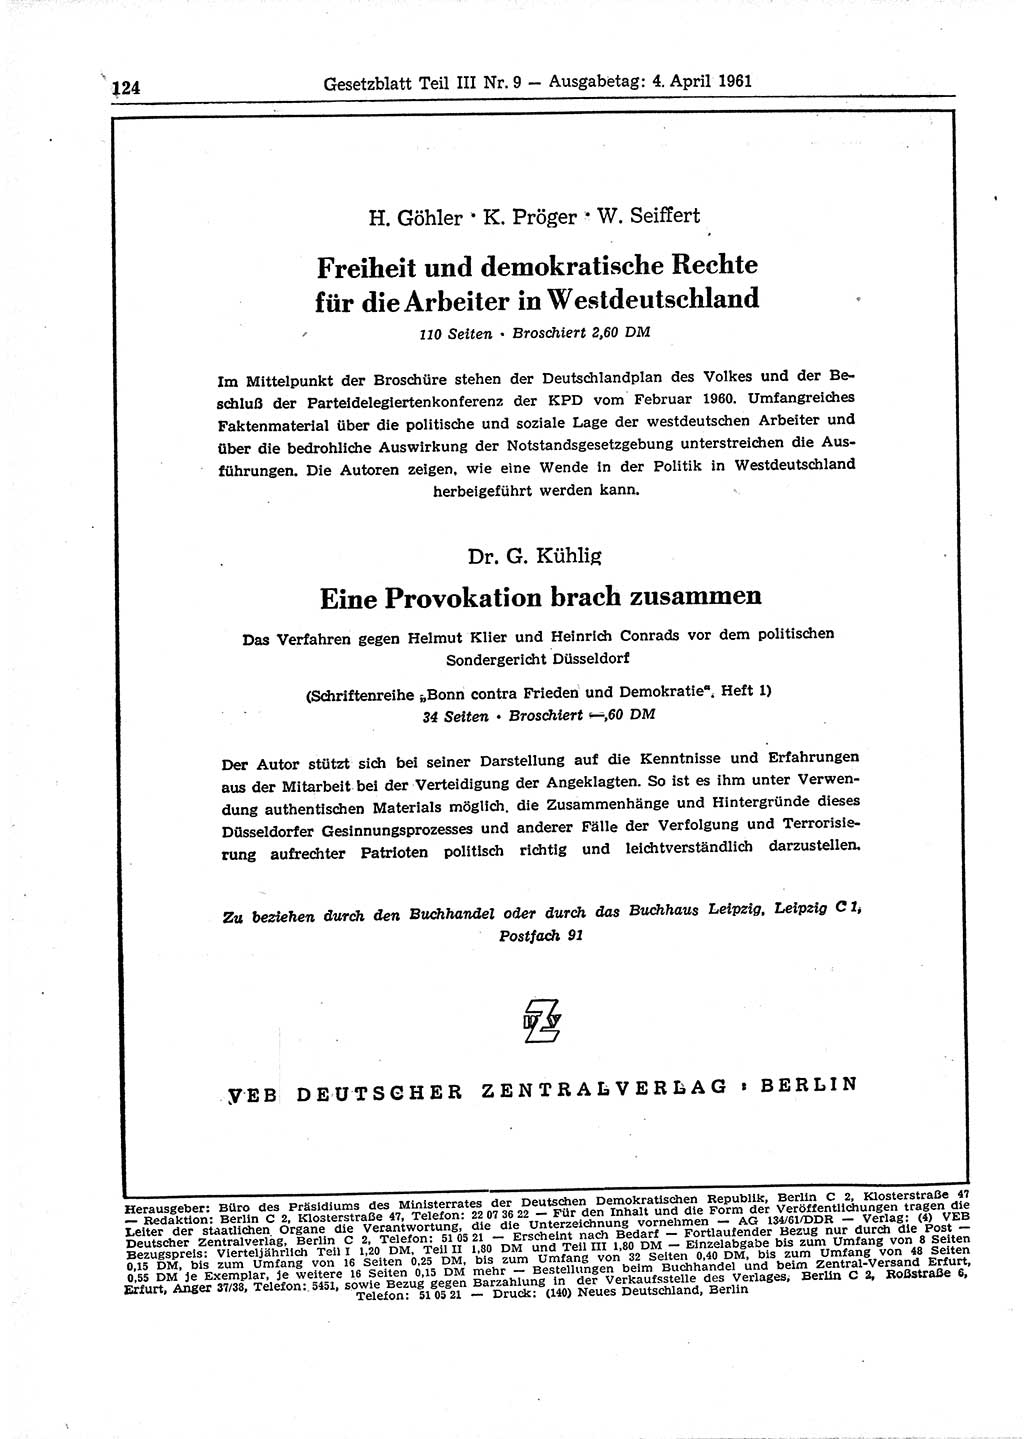 Gesetzblatt (GBl.) der Deutschen Demokratischen Republik (DDR) Teil ⅠⅠⅠ 1961, Seite 124 (GBl. DDR ⅠⅠⅠ 1961, S. 124)